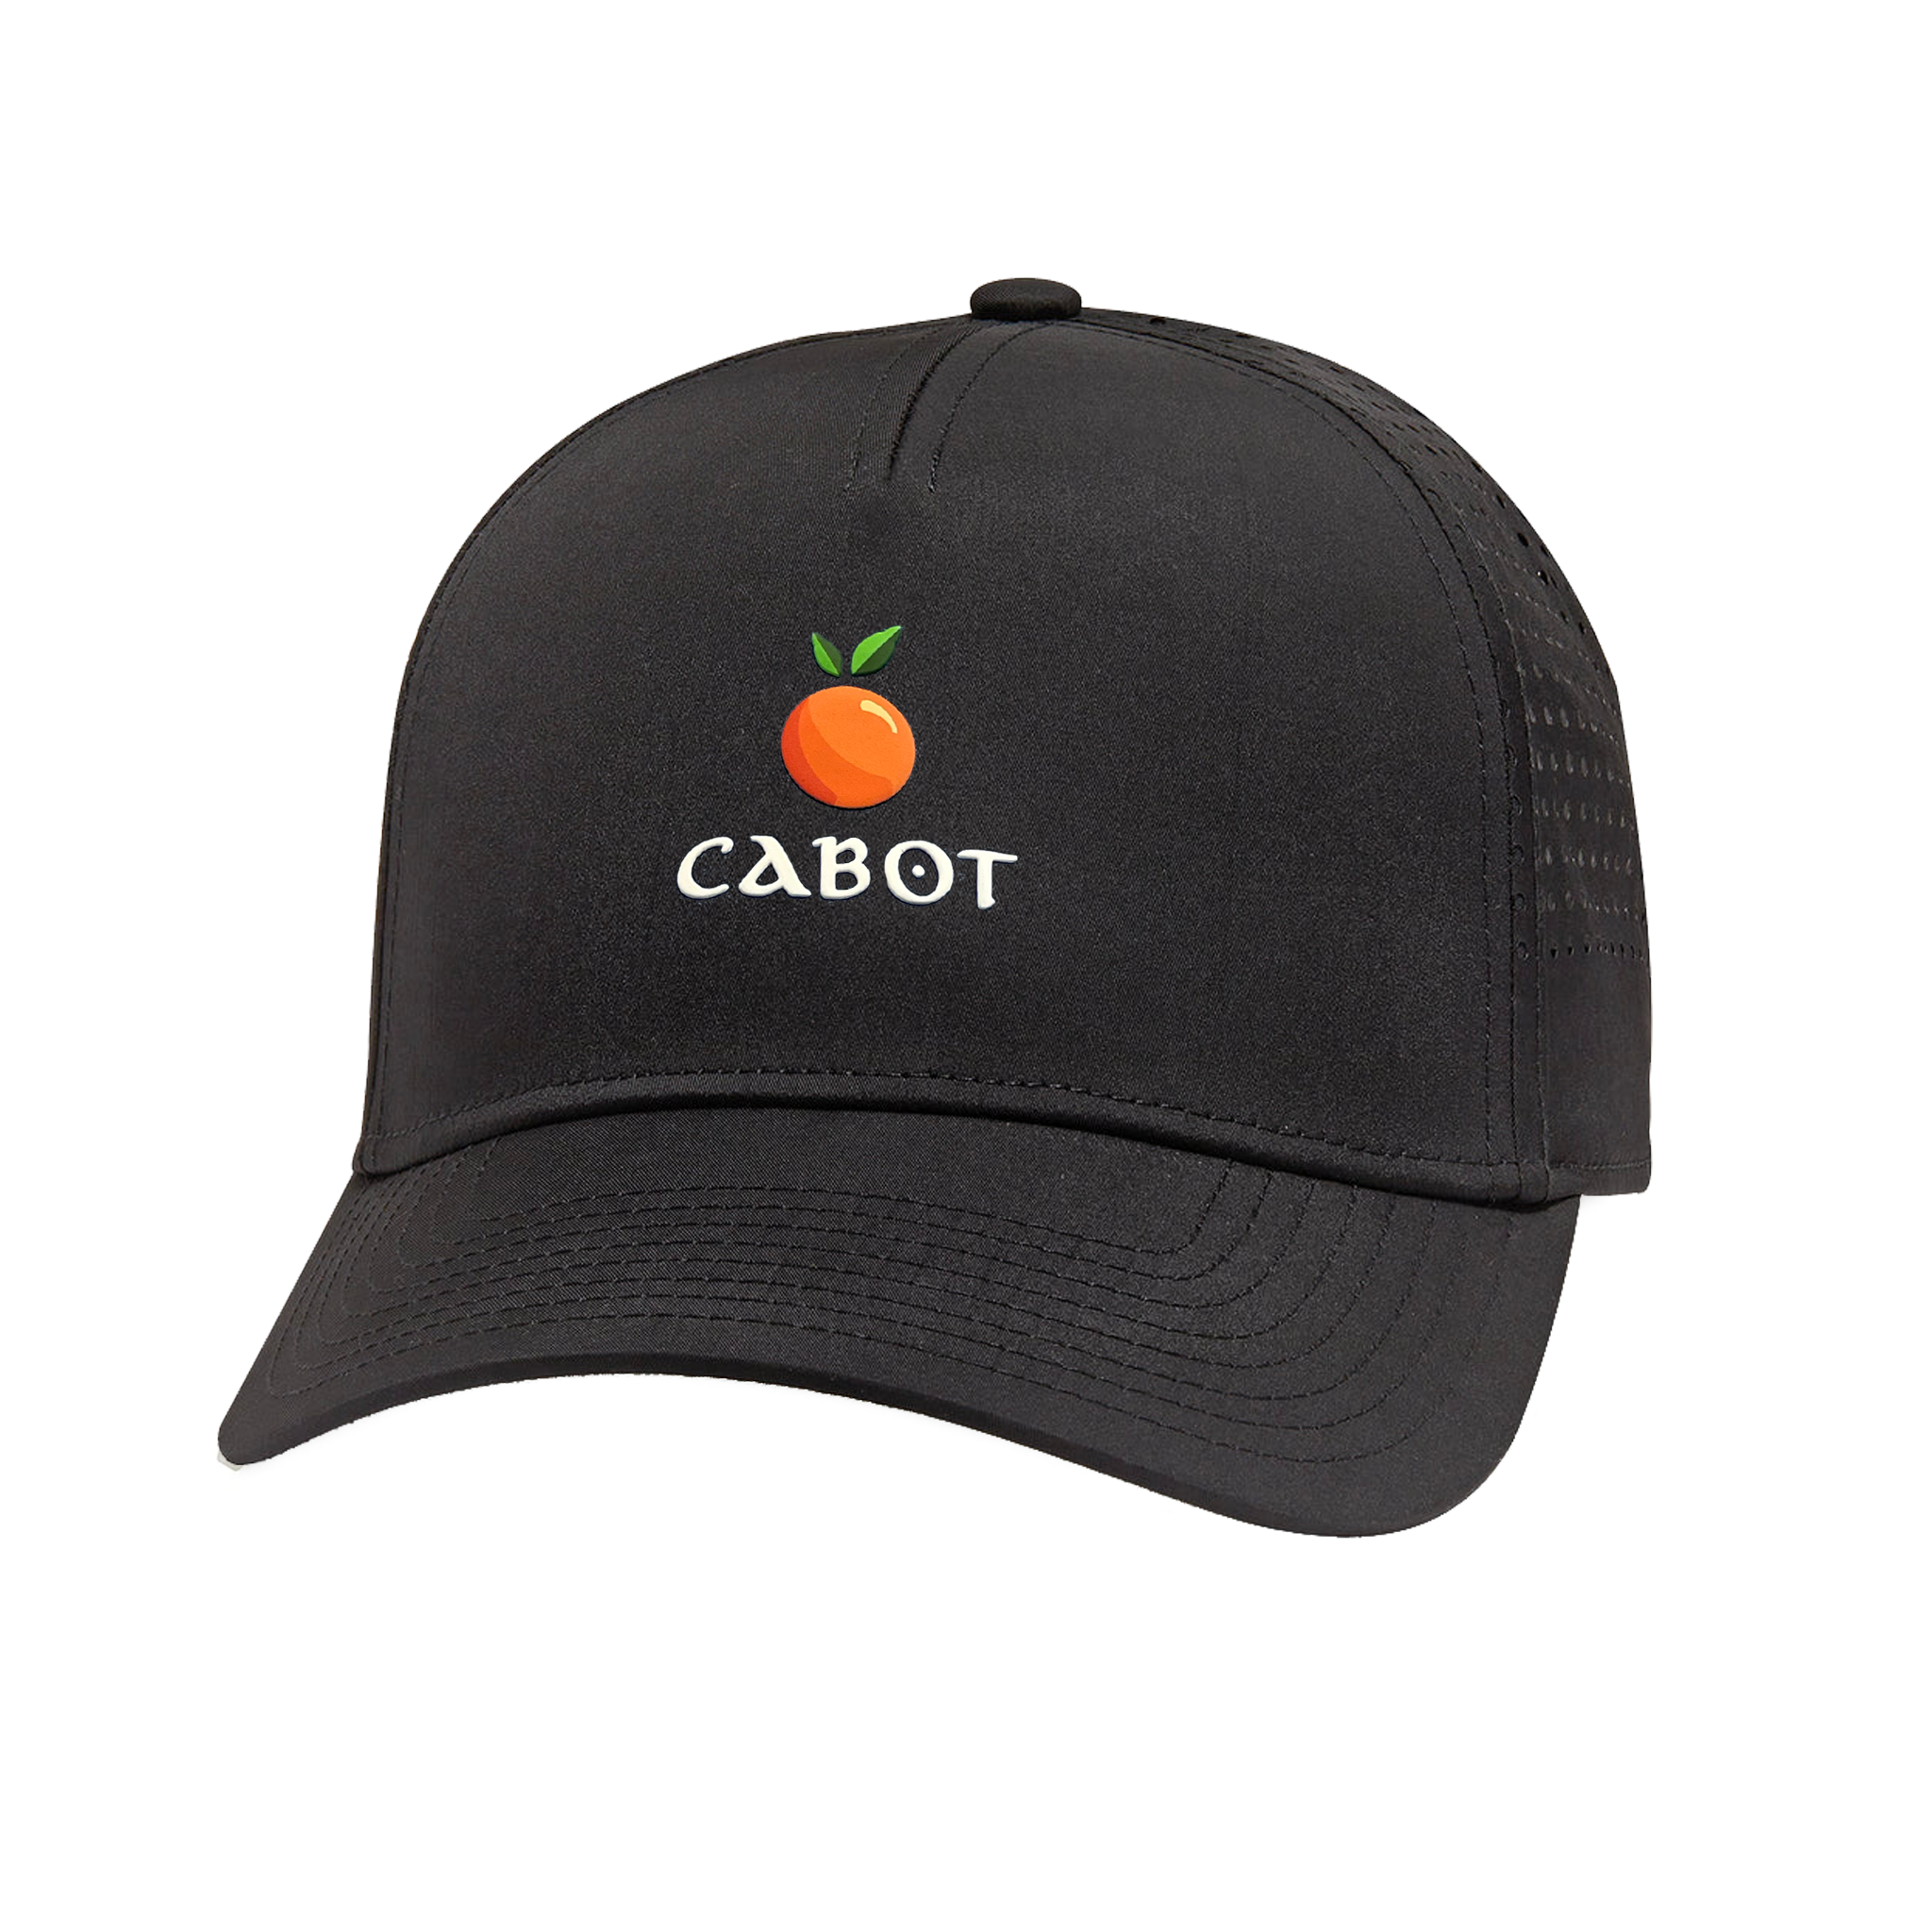 Cabot Citrus Valin - Black